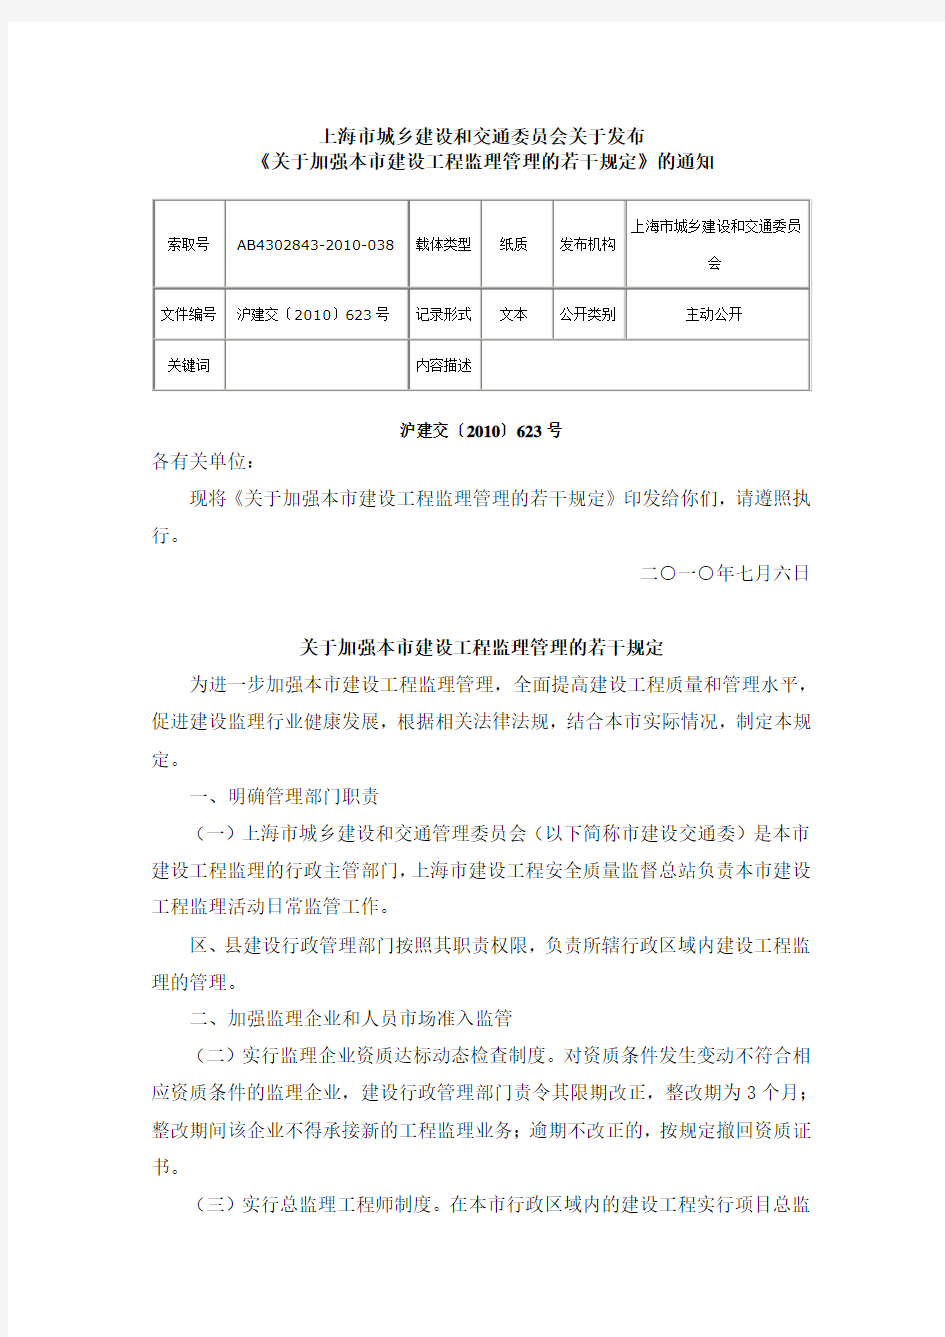 上海市《关于加强本市建设工程监理管理的若干规定》2010年623号文